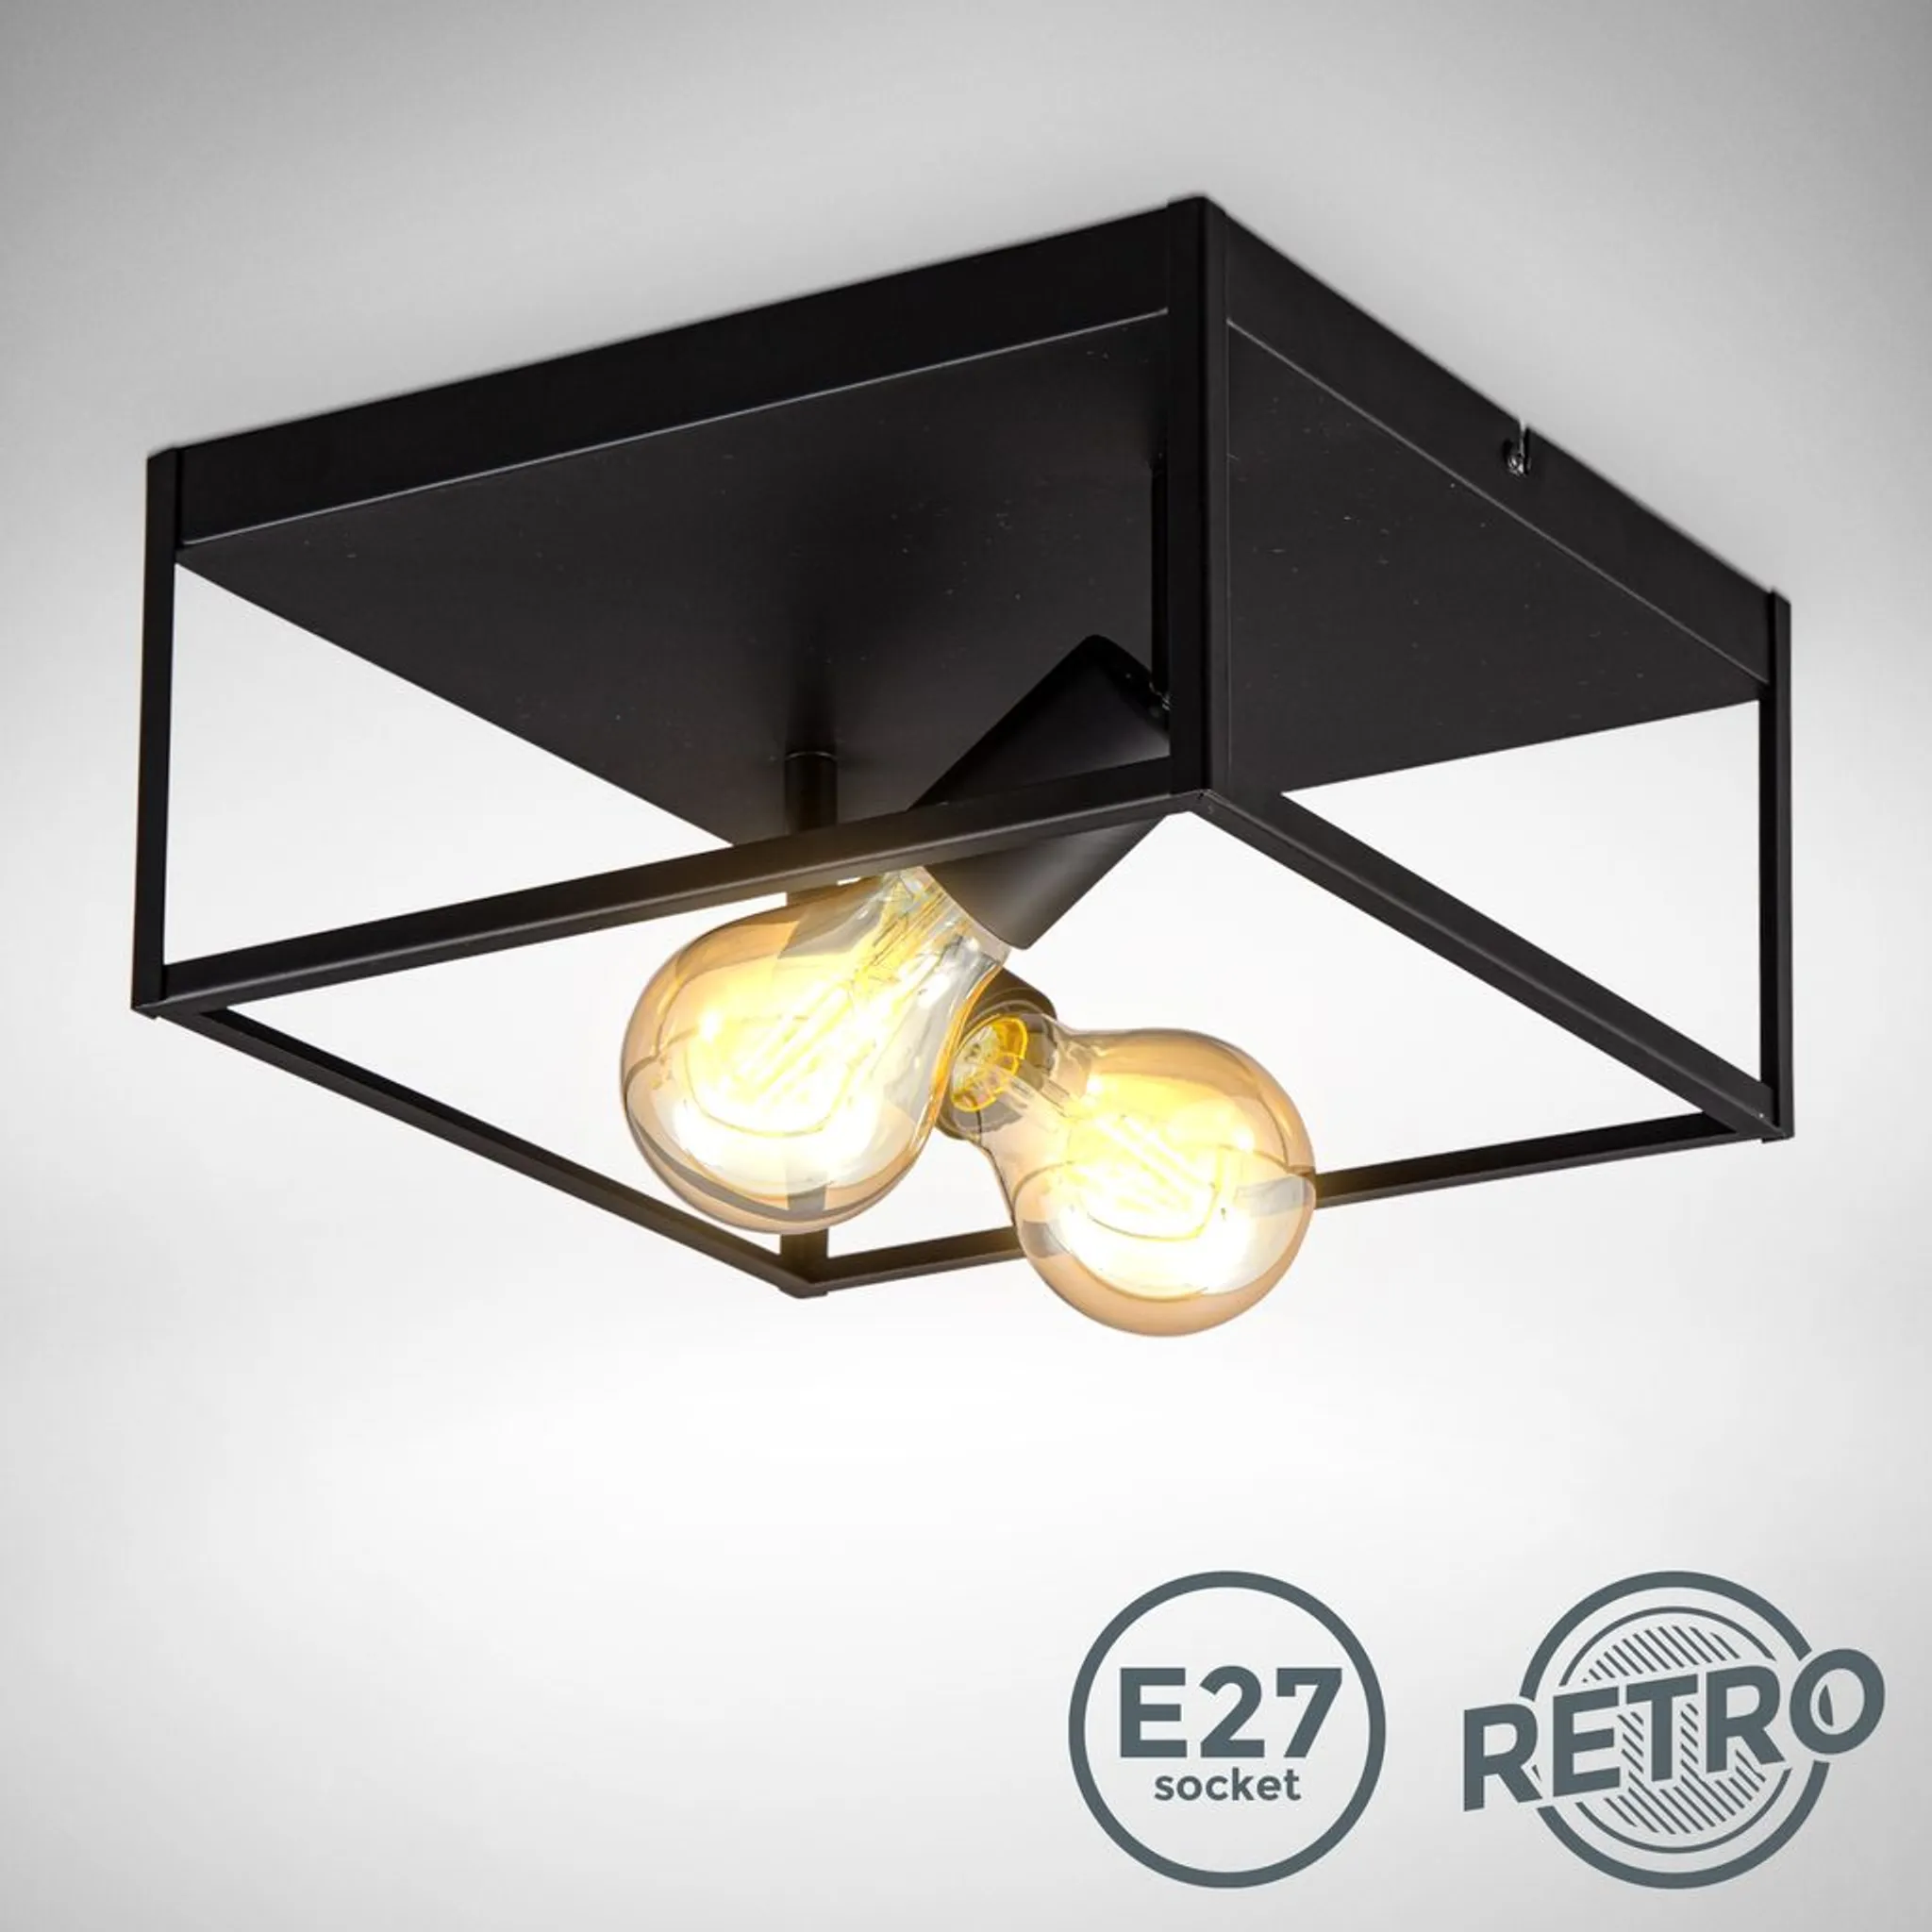 Deckenleuchte schwarz Retro Käfig Draht Vintage Metall E27 Deckenlampe Industrie